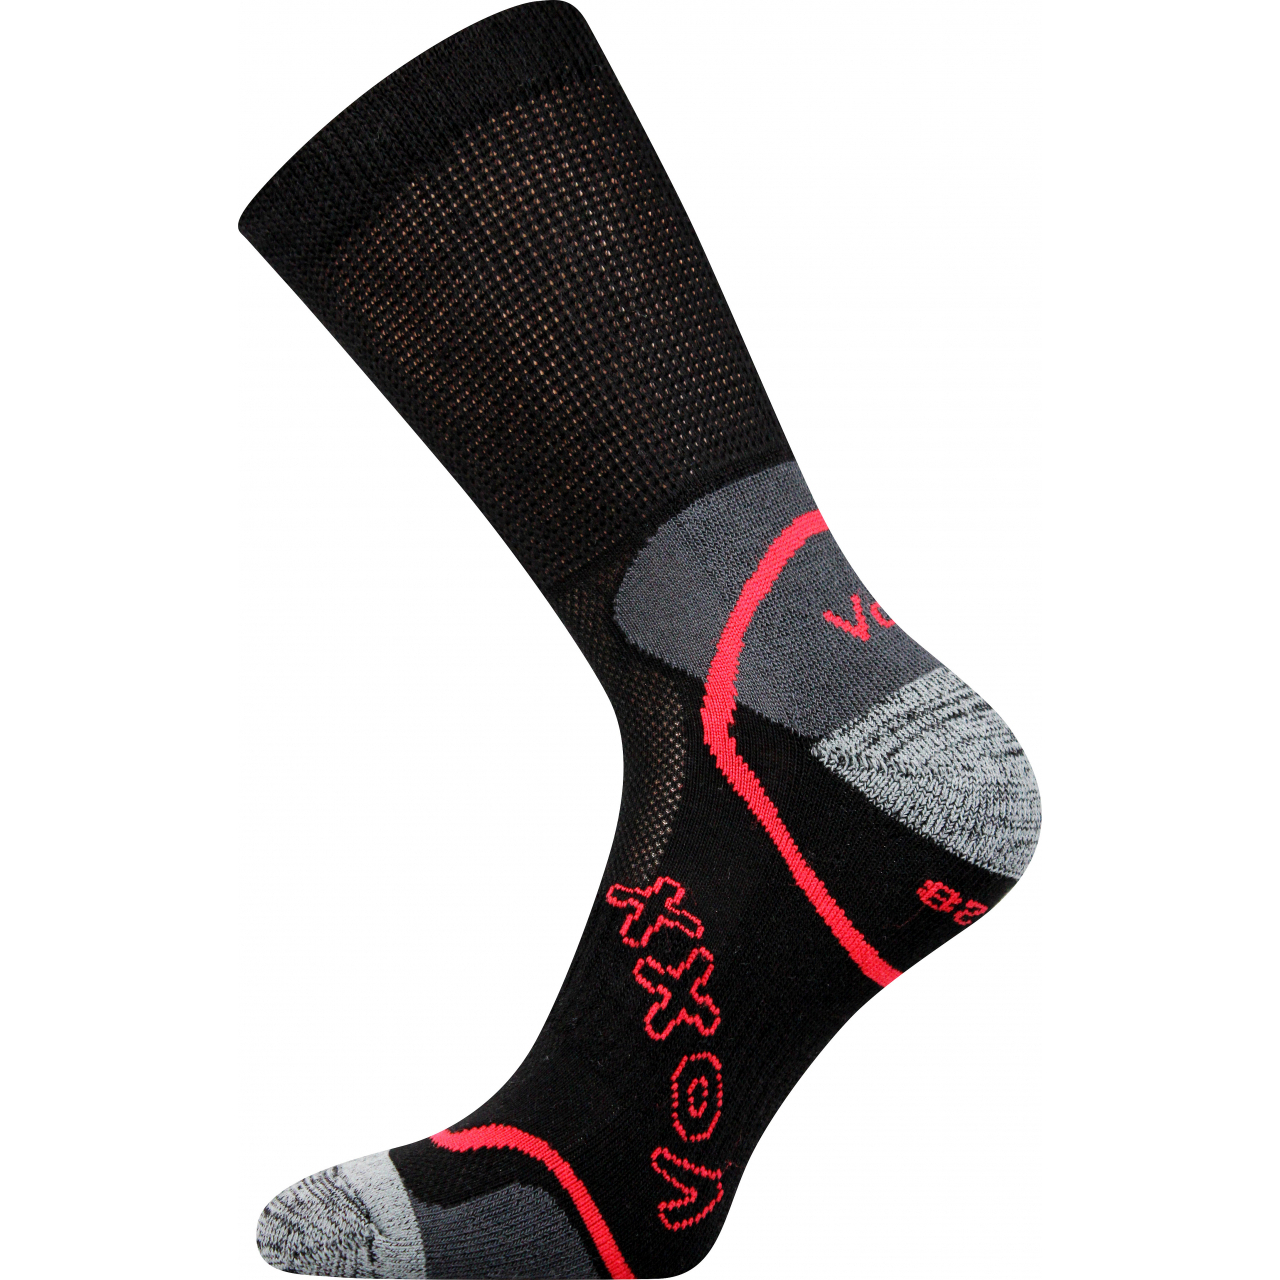 Ponožky sportovní unisex Voxx Meteor - černé, 43-46